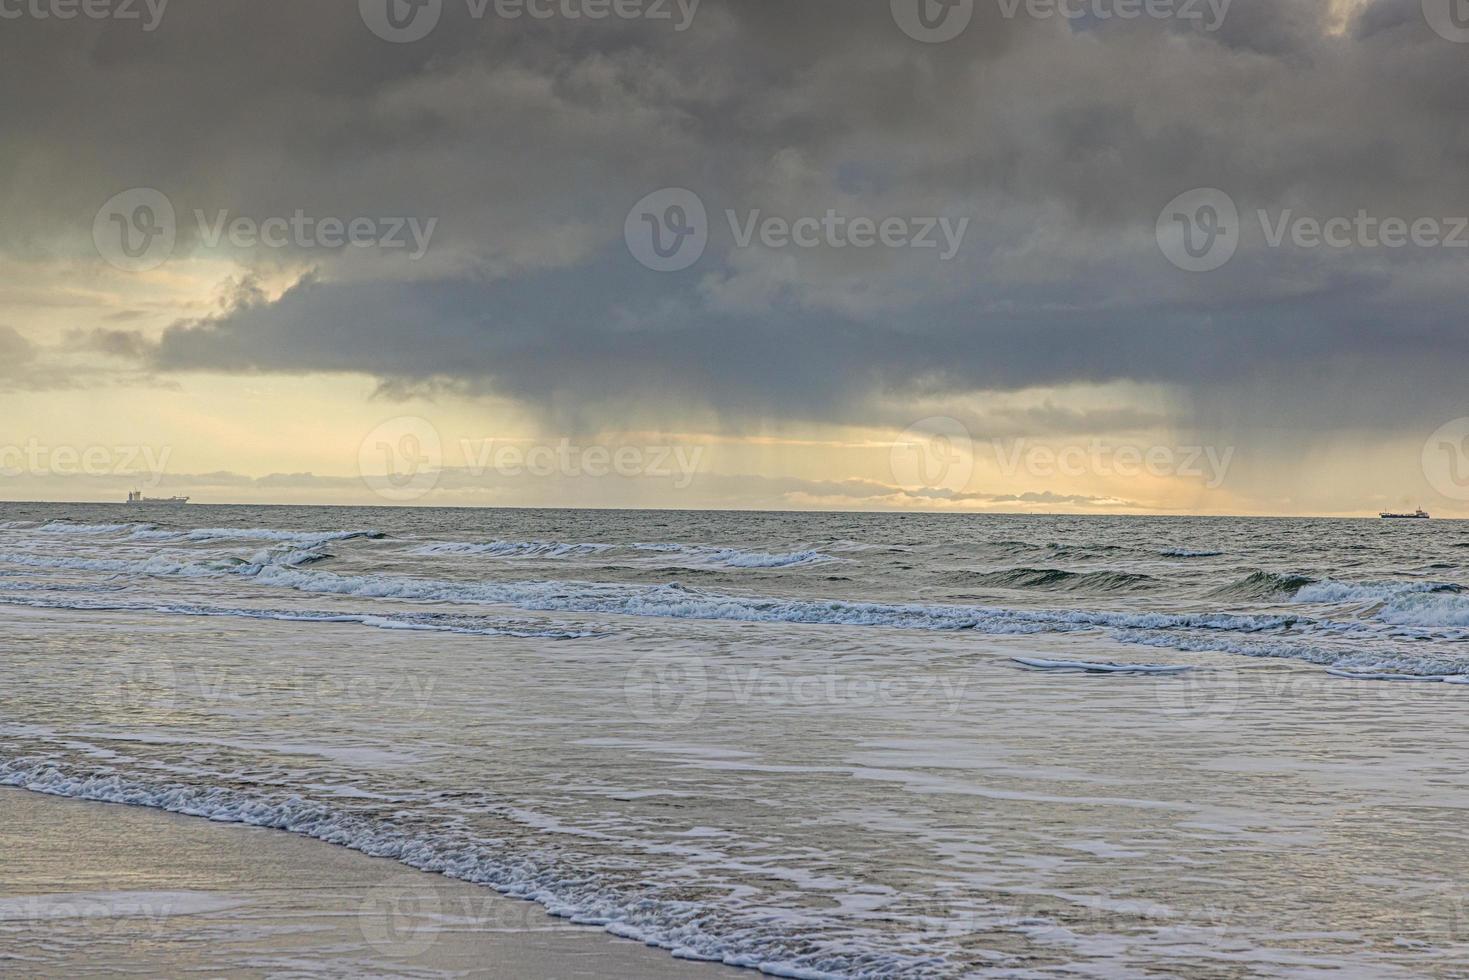 imagen de un barco de transporte en un mar tormentoso fotografiado desde una playa foto